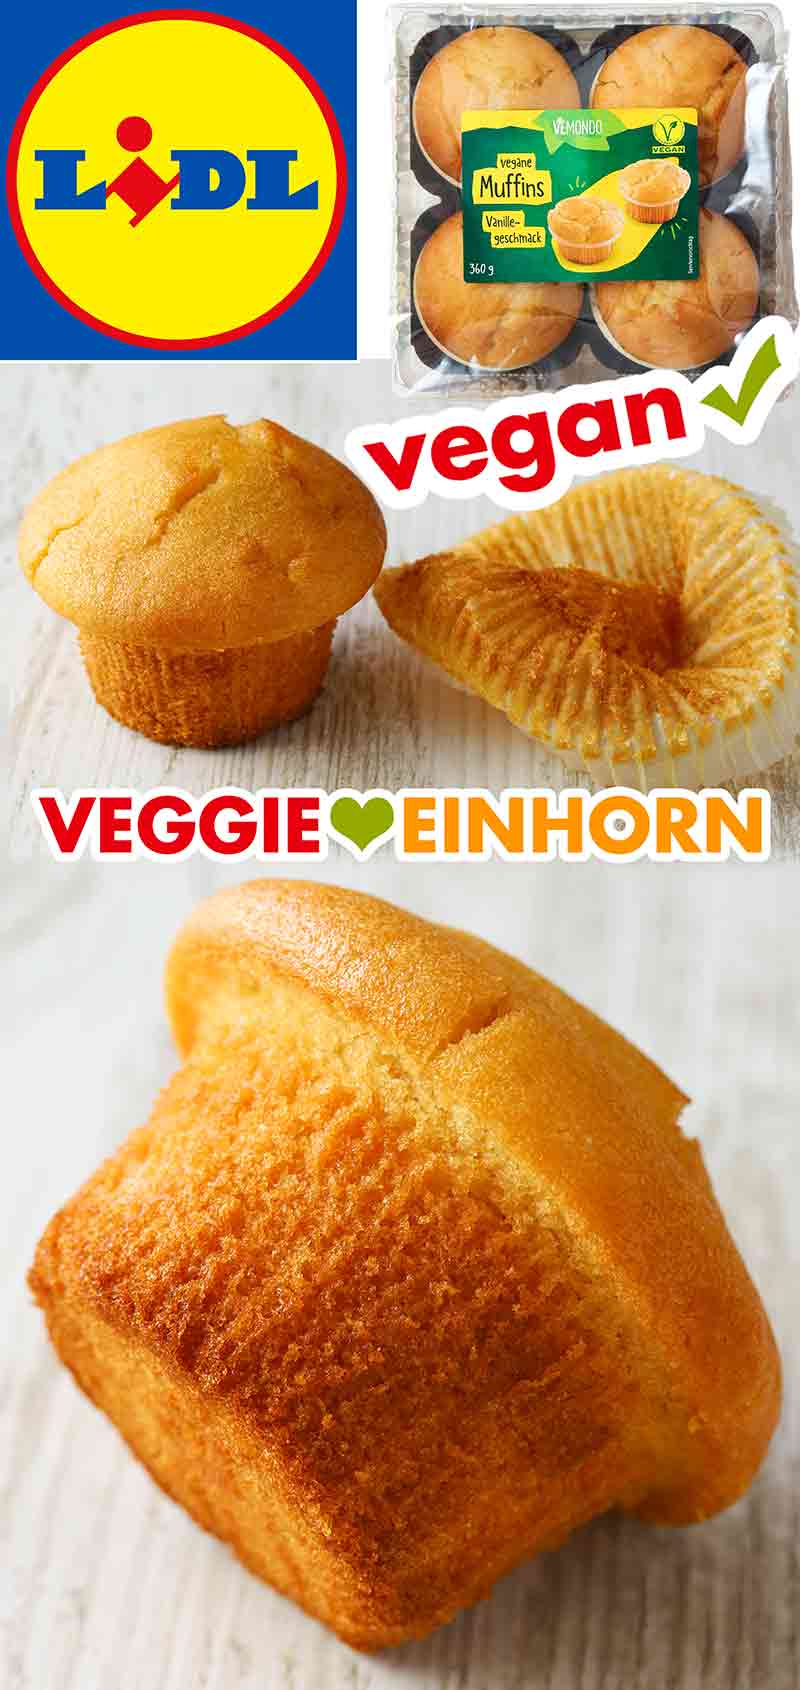 Ausgepackter veganer Vanillemuffin von Lidl